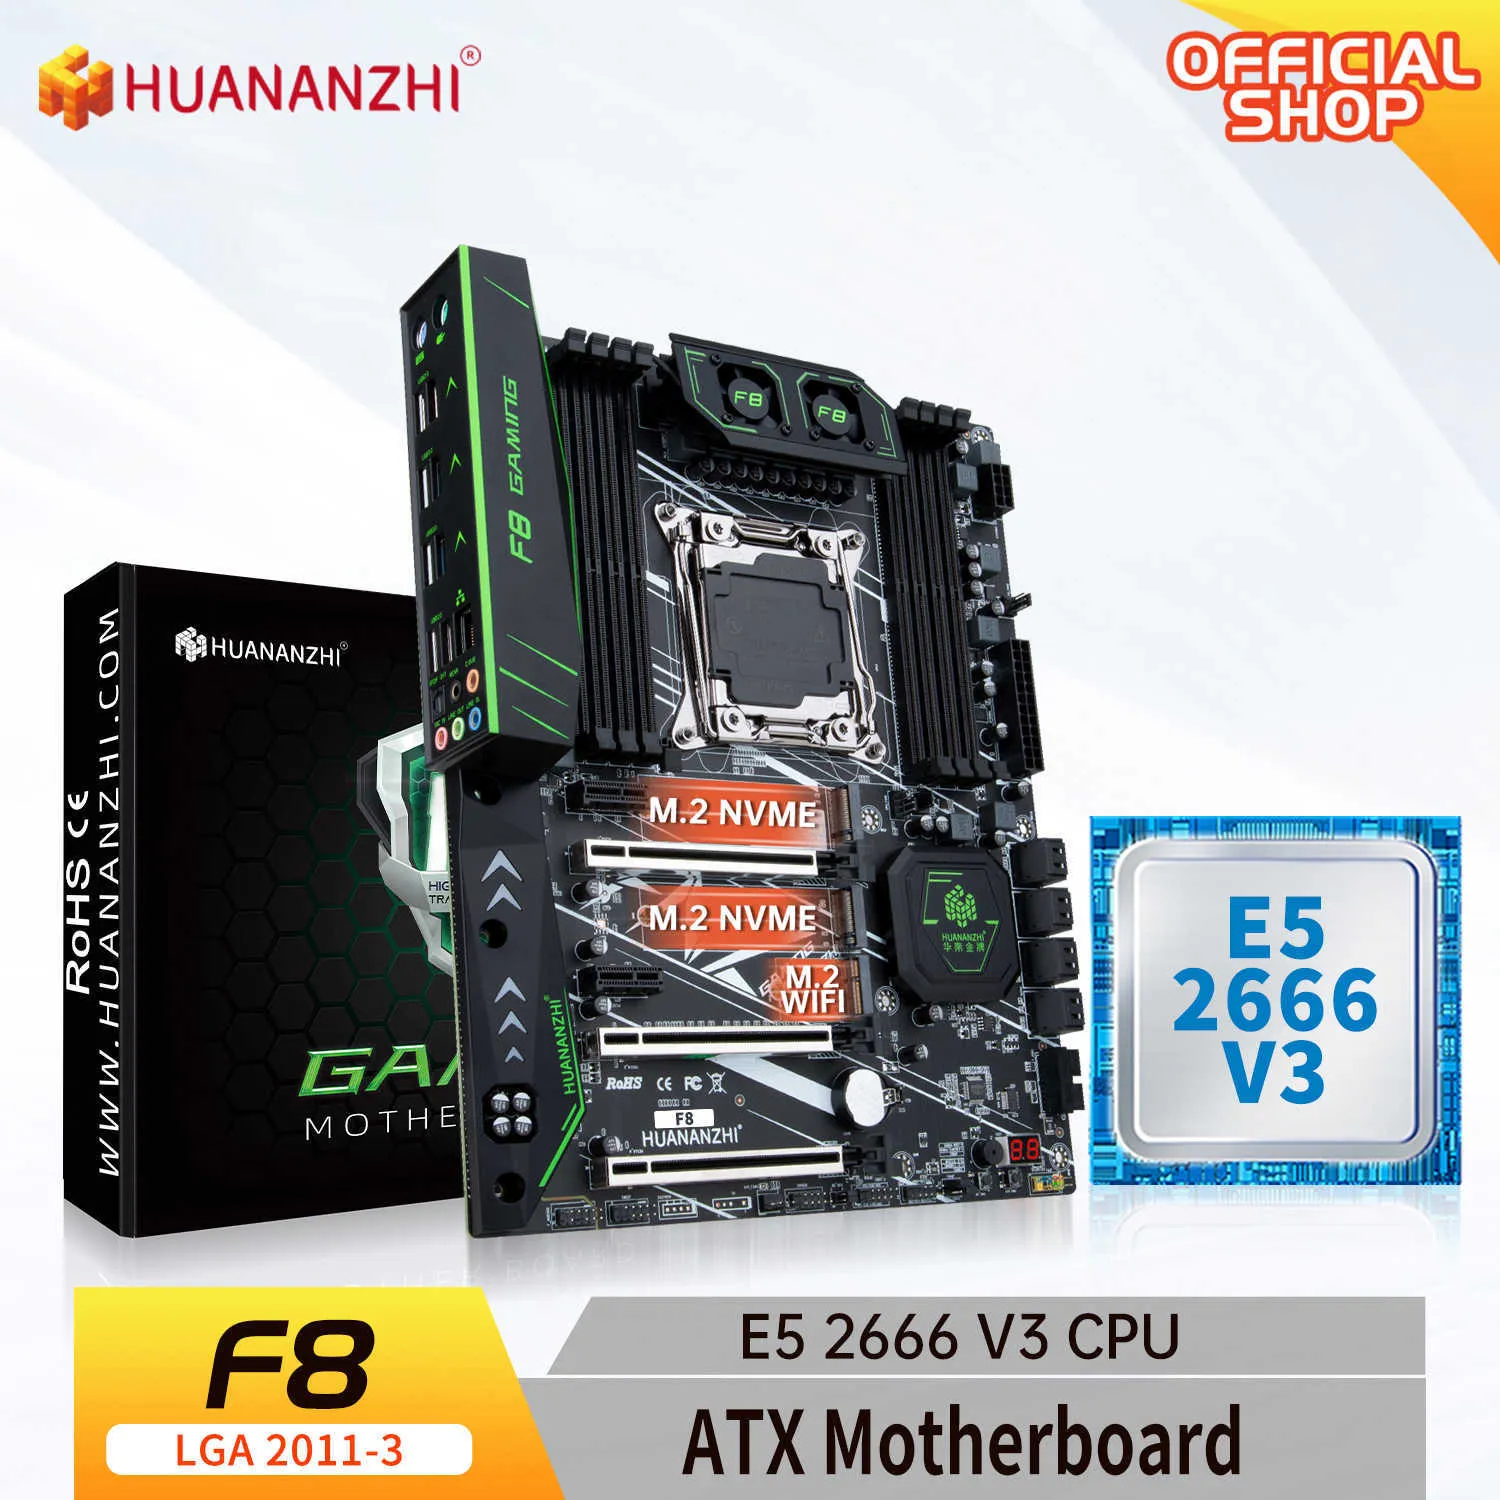 Huananzhi F8 LGA 2011-3 Moderkort med Intel Xeon E5 2666 V3 LGA 2011-3 DDR4 RECC Nonecc Memory Combo Kit Set NVME